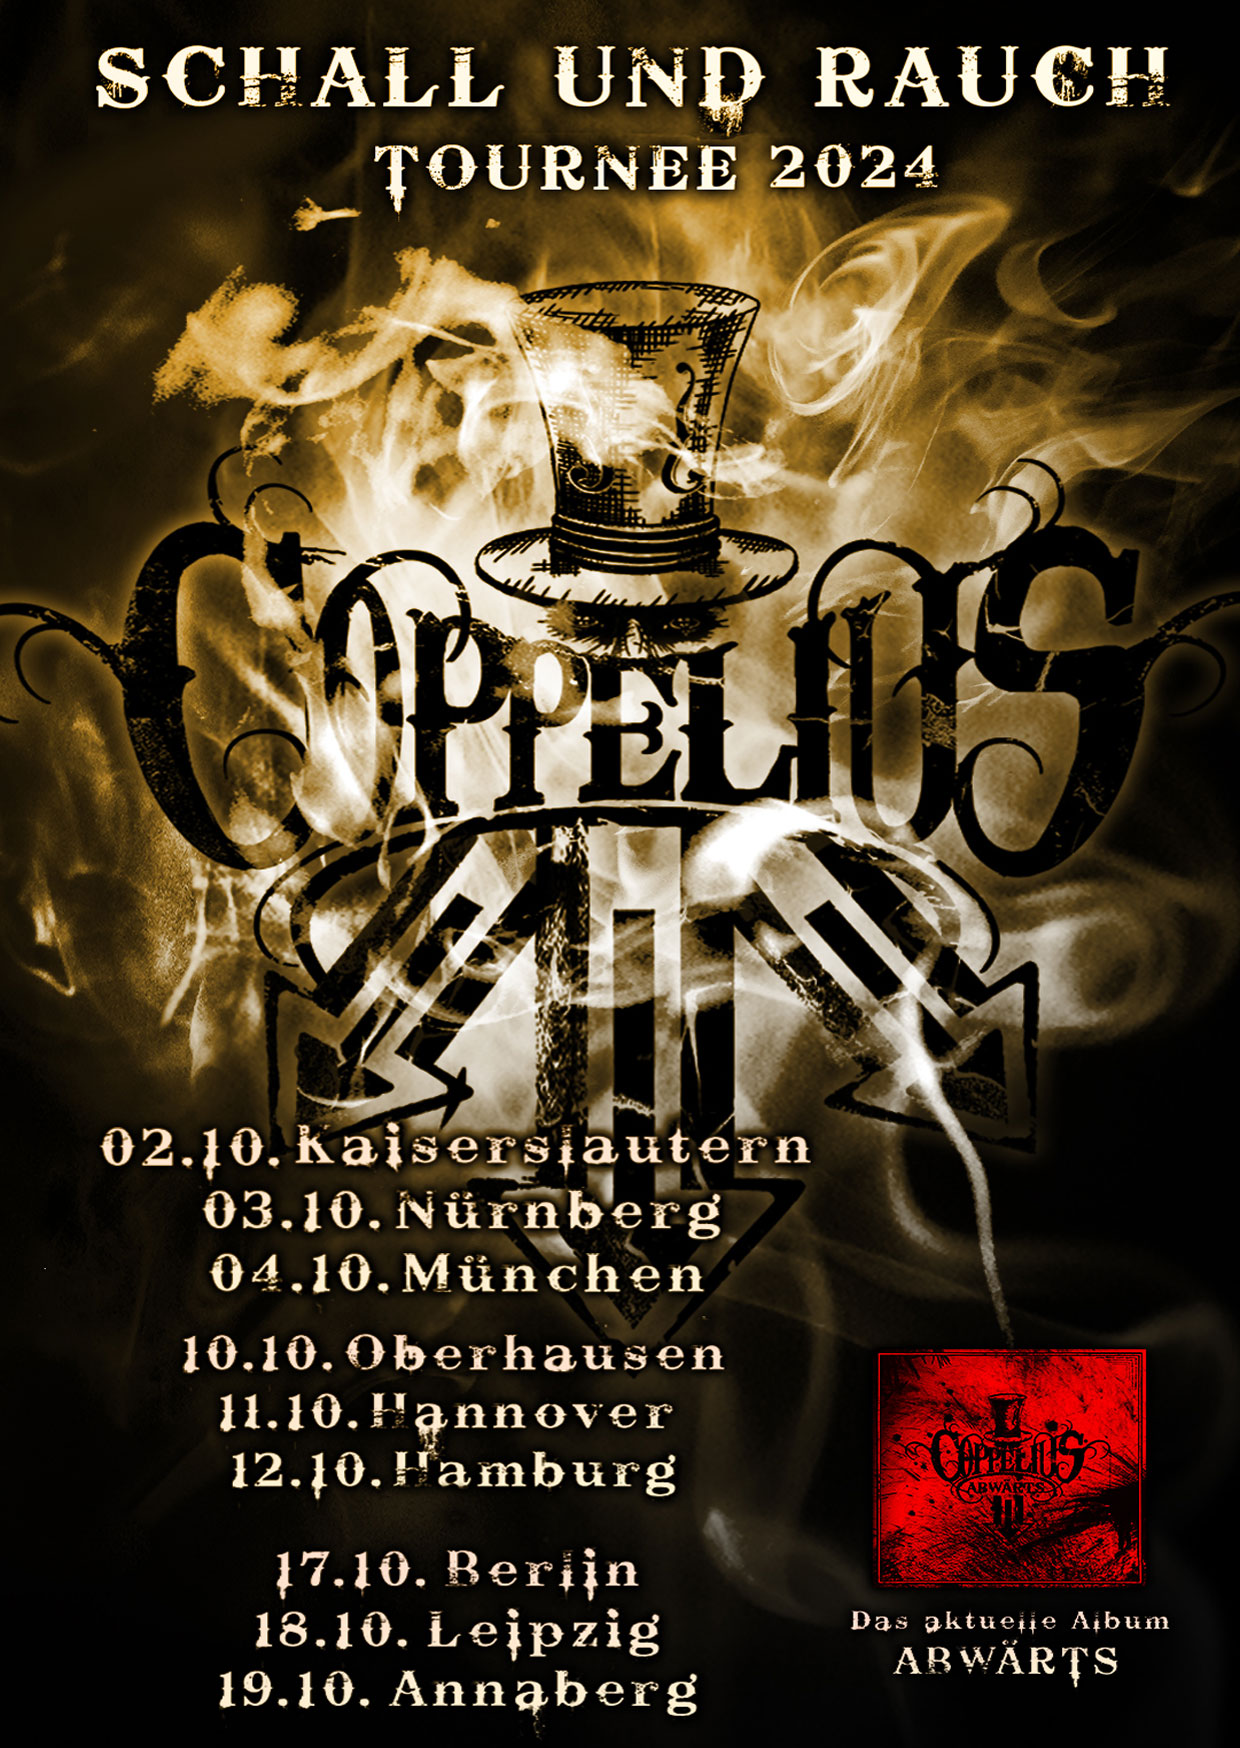 Coppelius - Schall Rauch Tournee 2024 at Hirsch Nürnberg Tickets